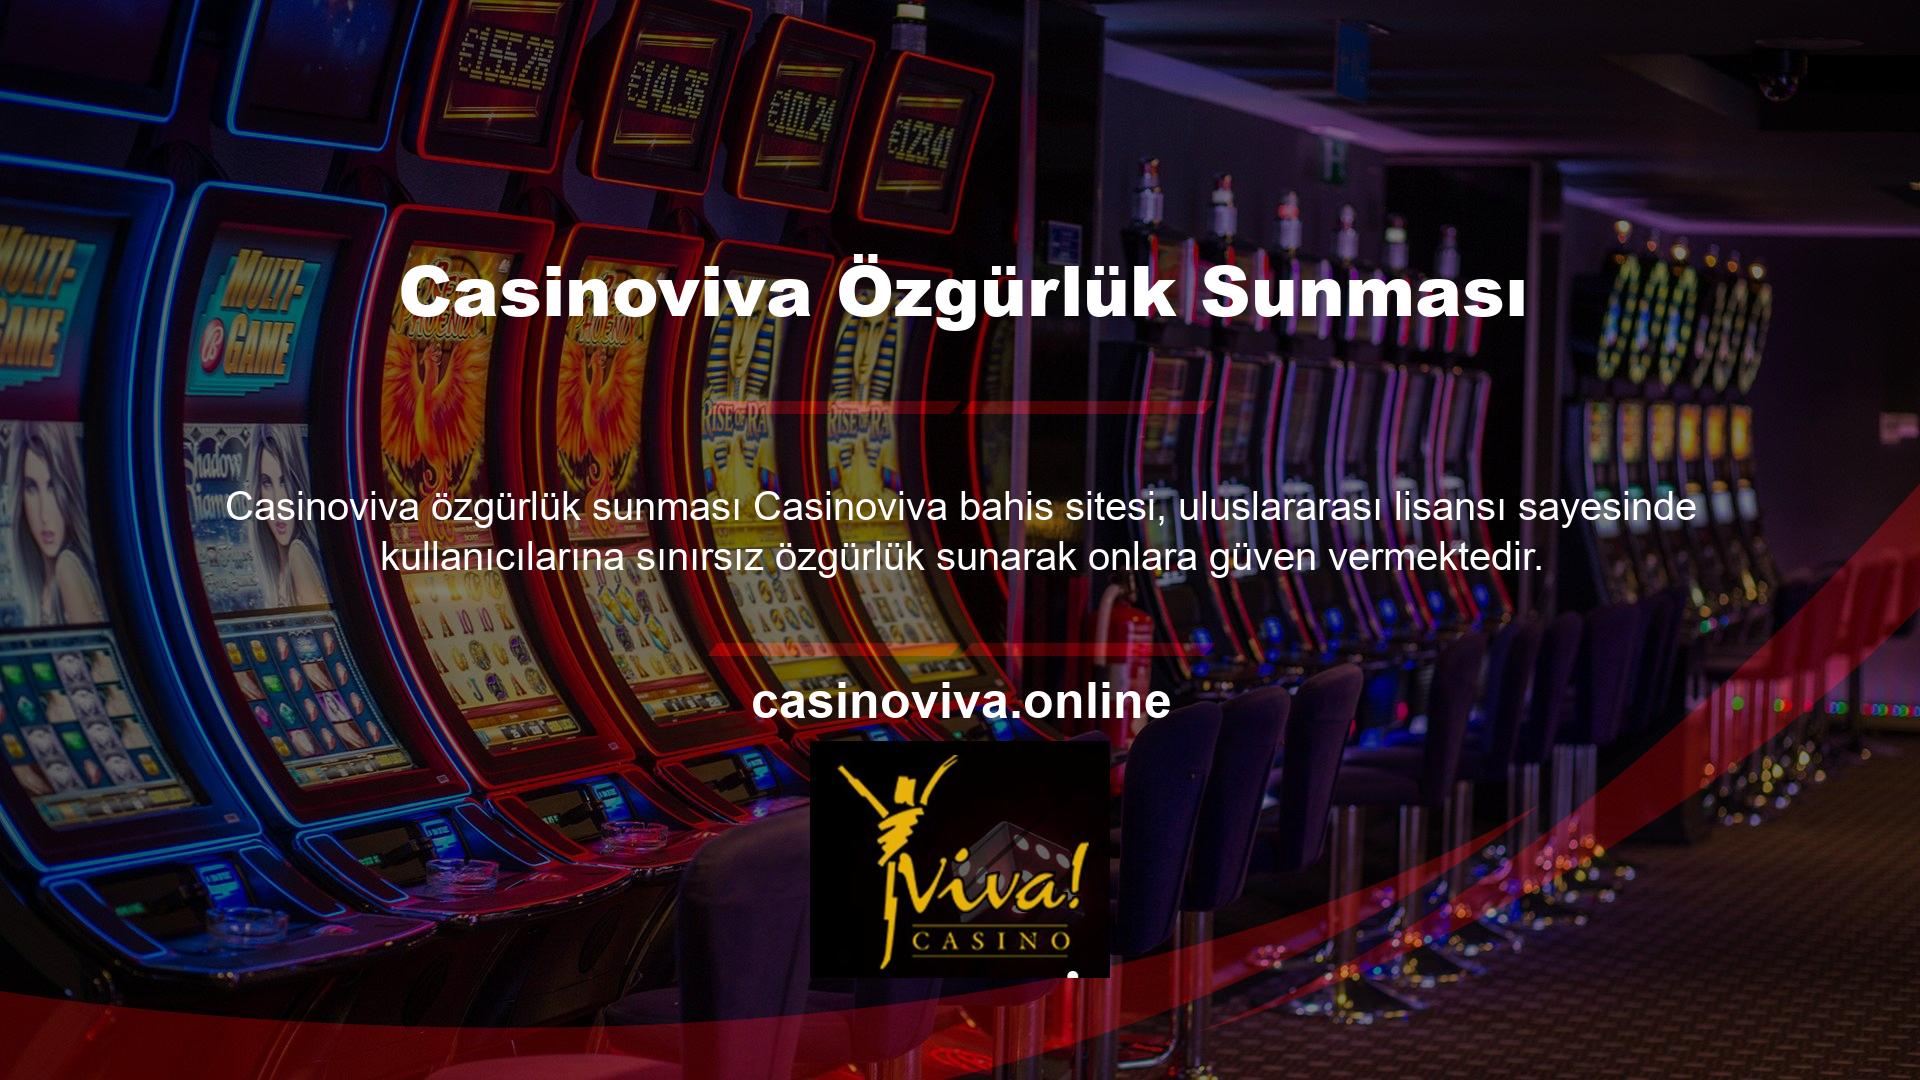 Çevrimiçi casino hizmetlerinin sağlanması Türk kanunları tarafından yasaklanmıştır ve özel incelemeye tabidir